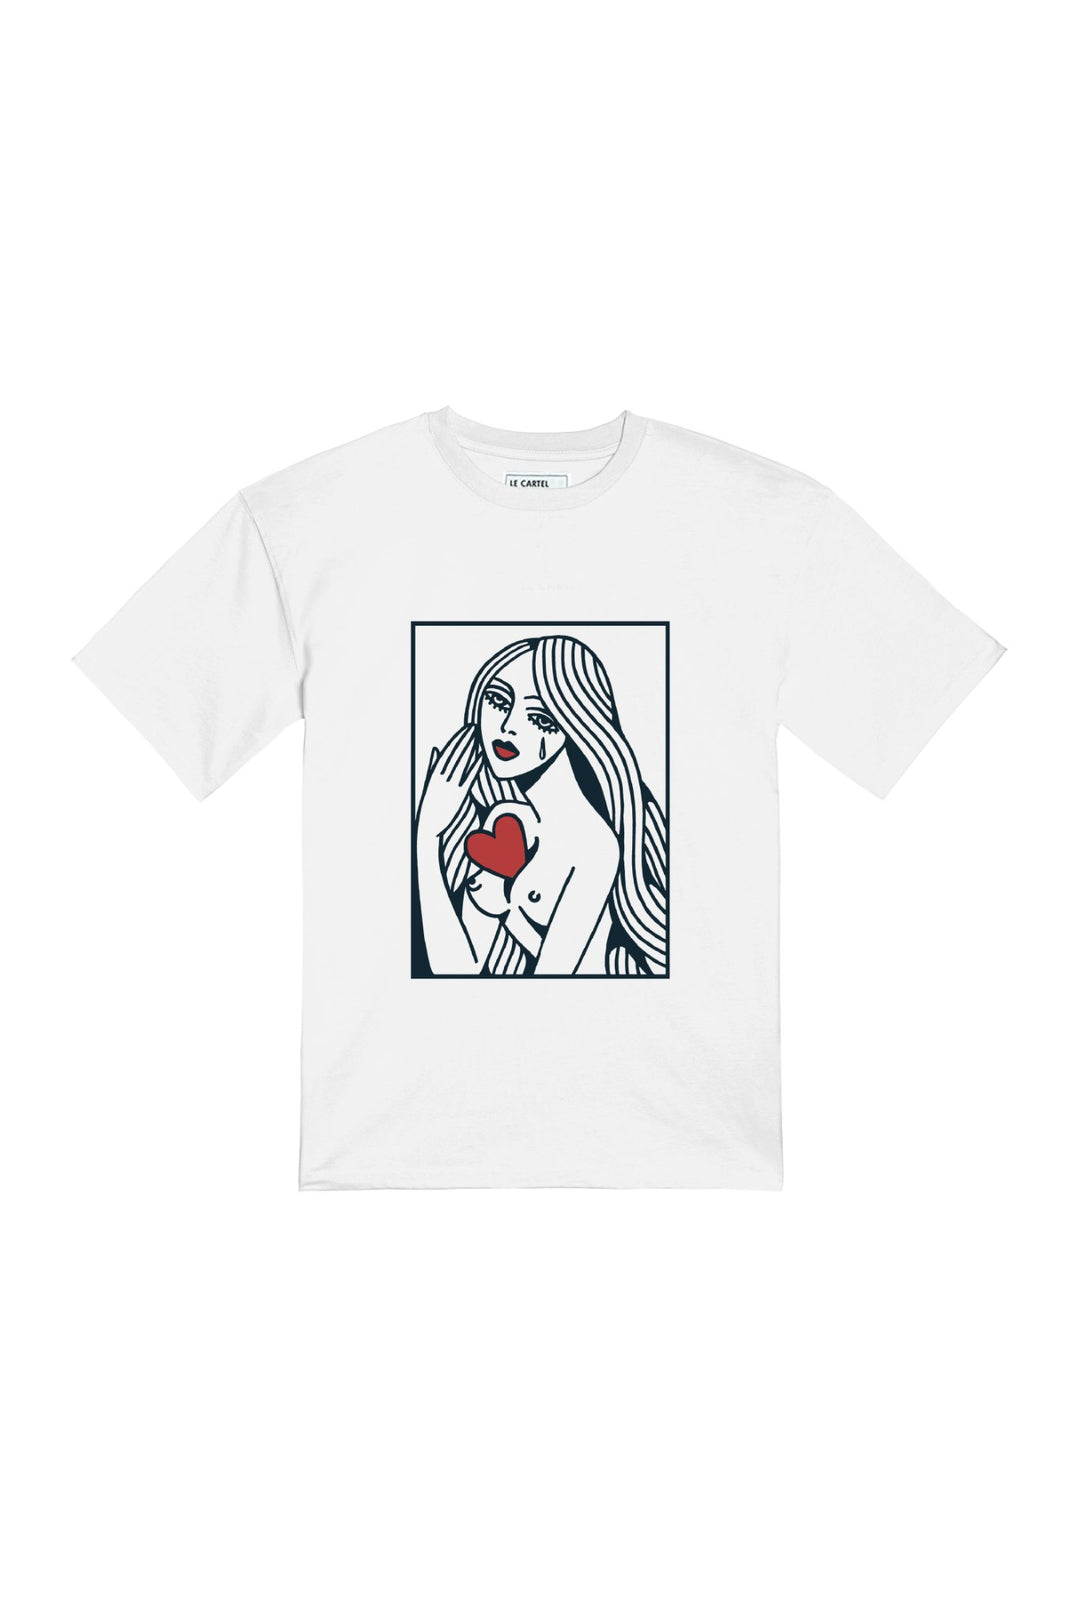 MONA・T - shirt unisexe・Blanc - Le Cartel